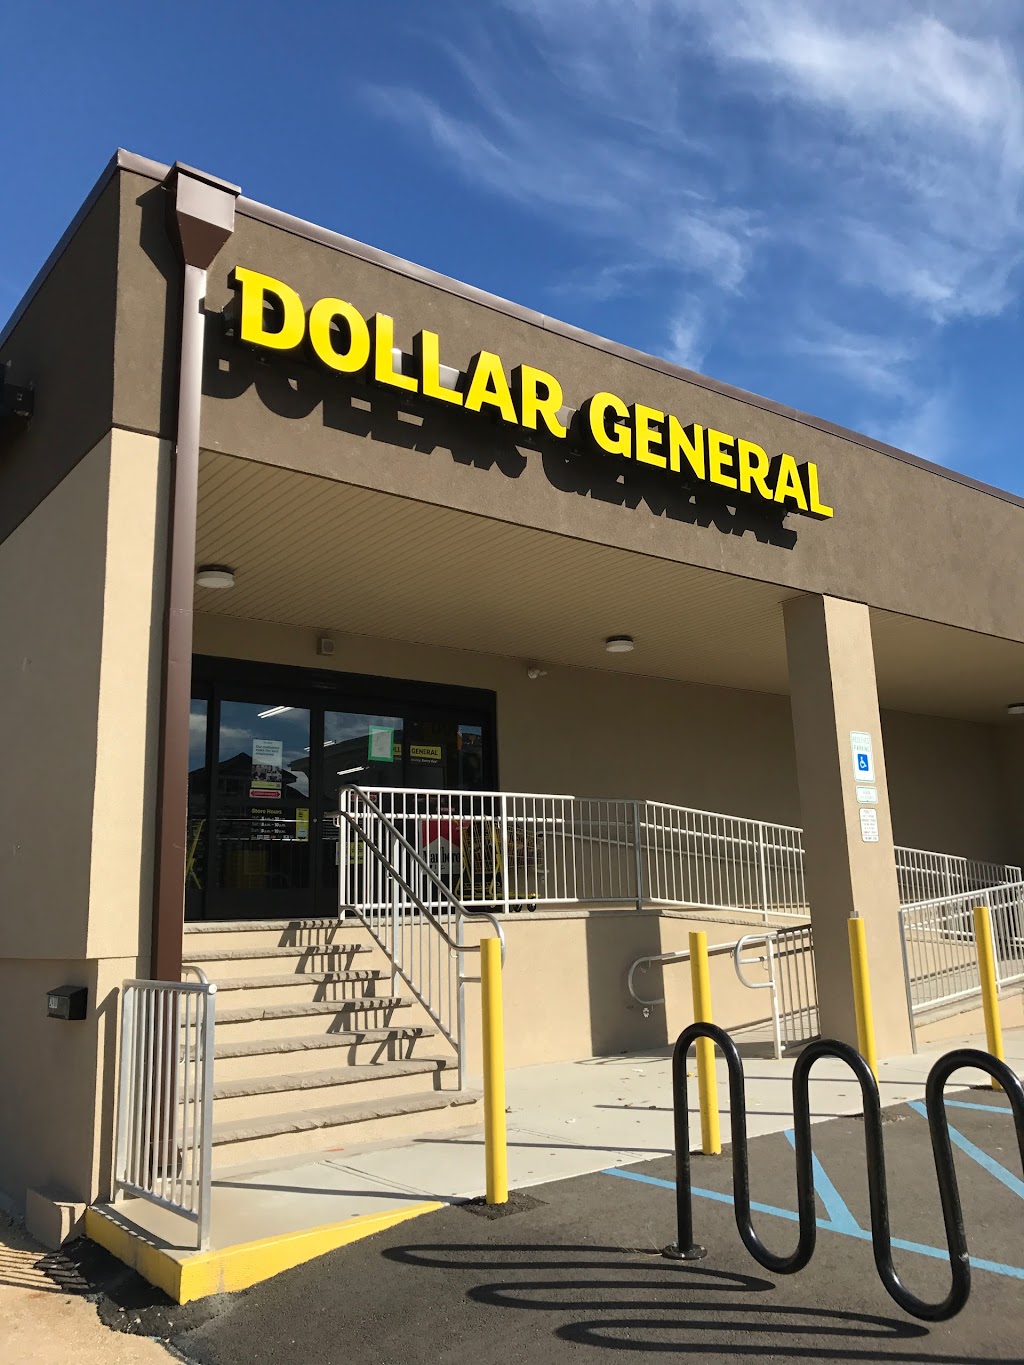 Dollar General | 2400 Long Beach Blvd, Ship Bottom, NJ 08008 | Phone: (609) 389-9812